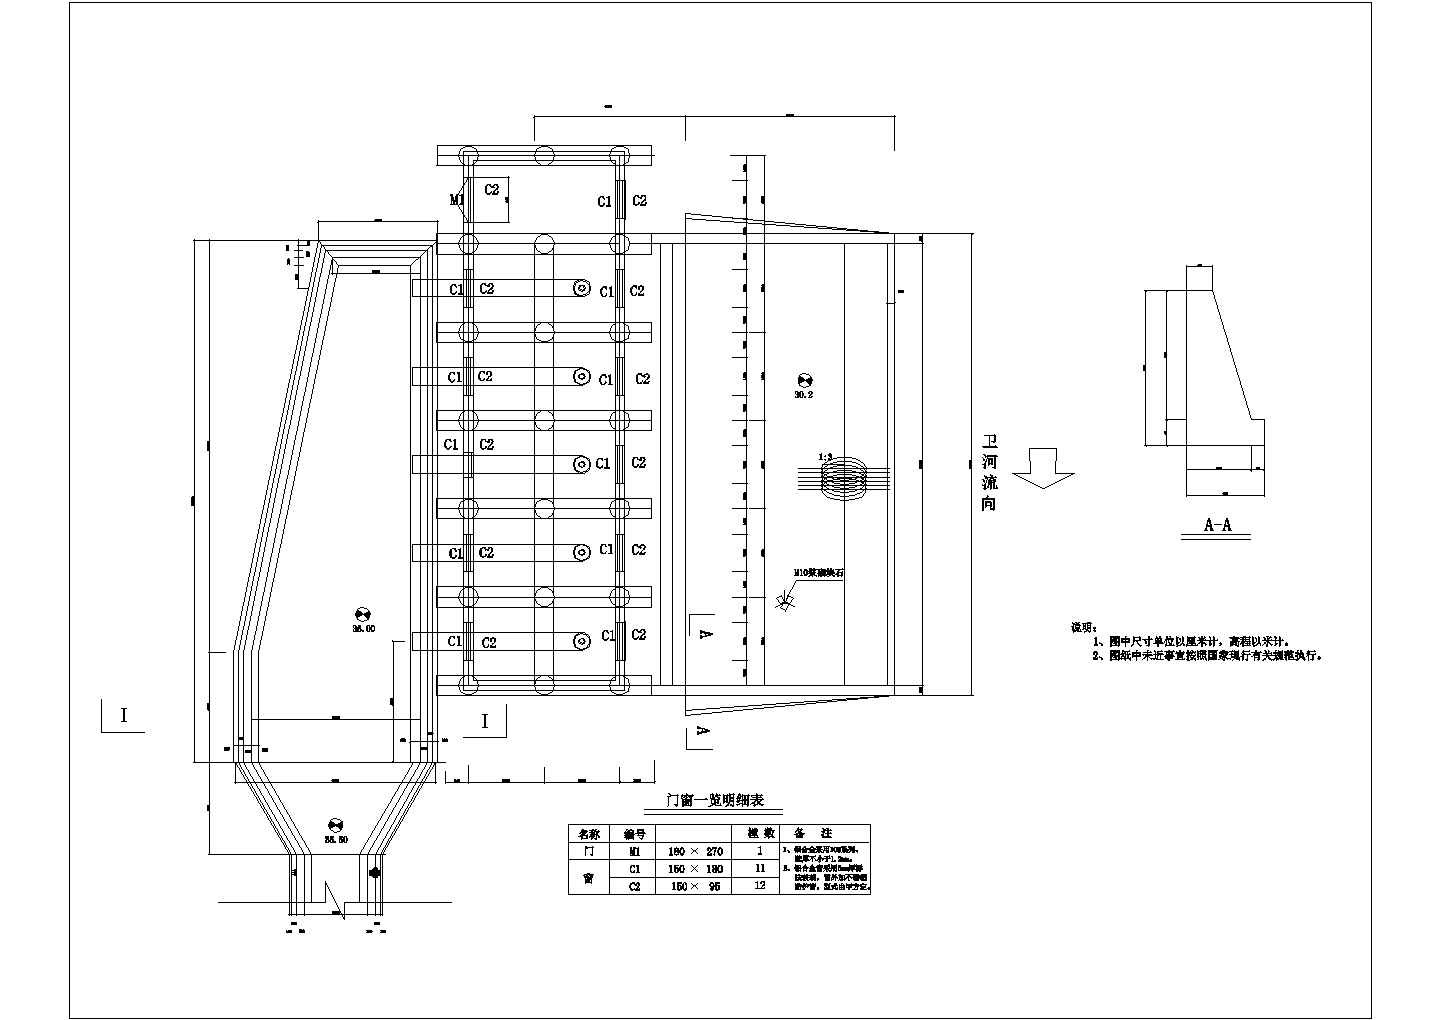 卫河泵站技术更新改造施工设计图纸